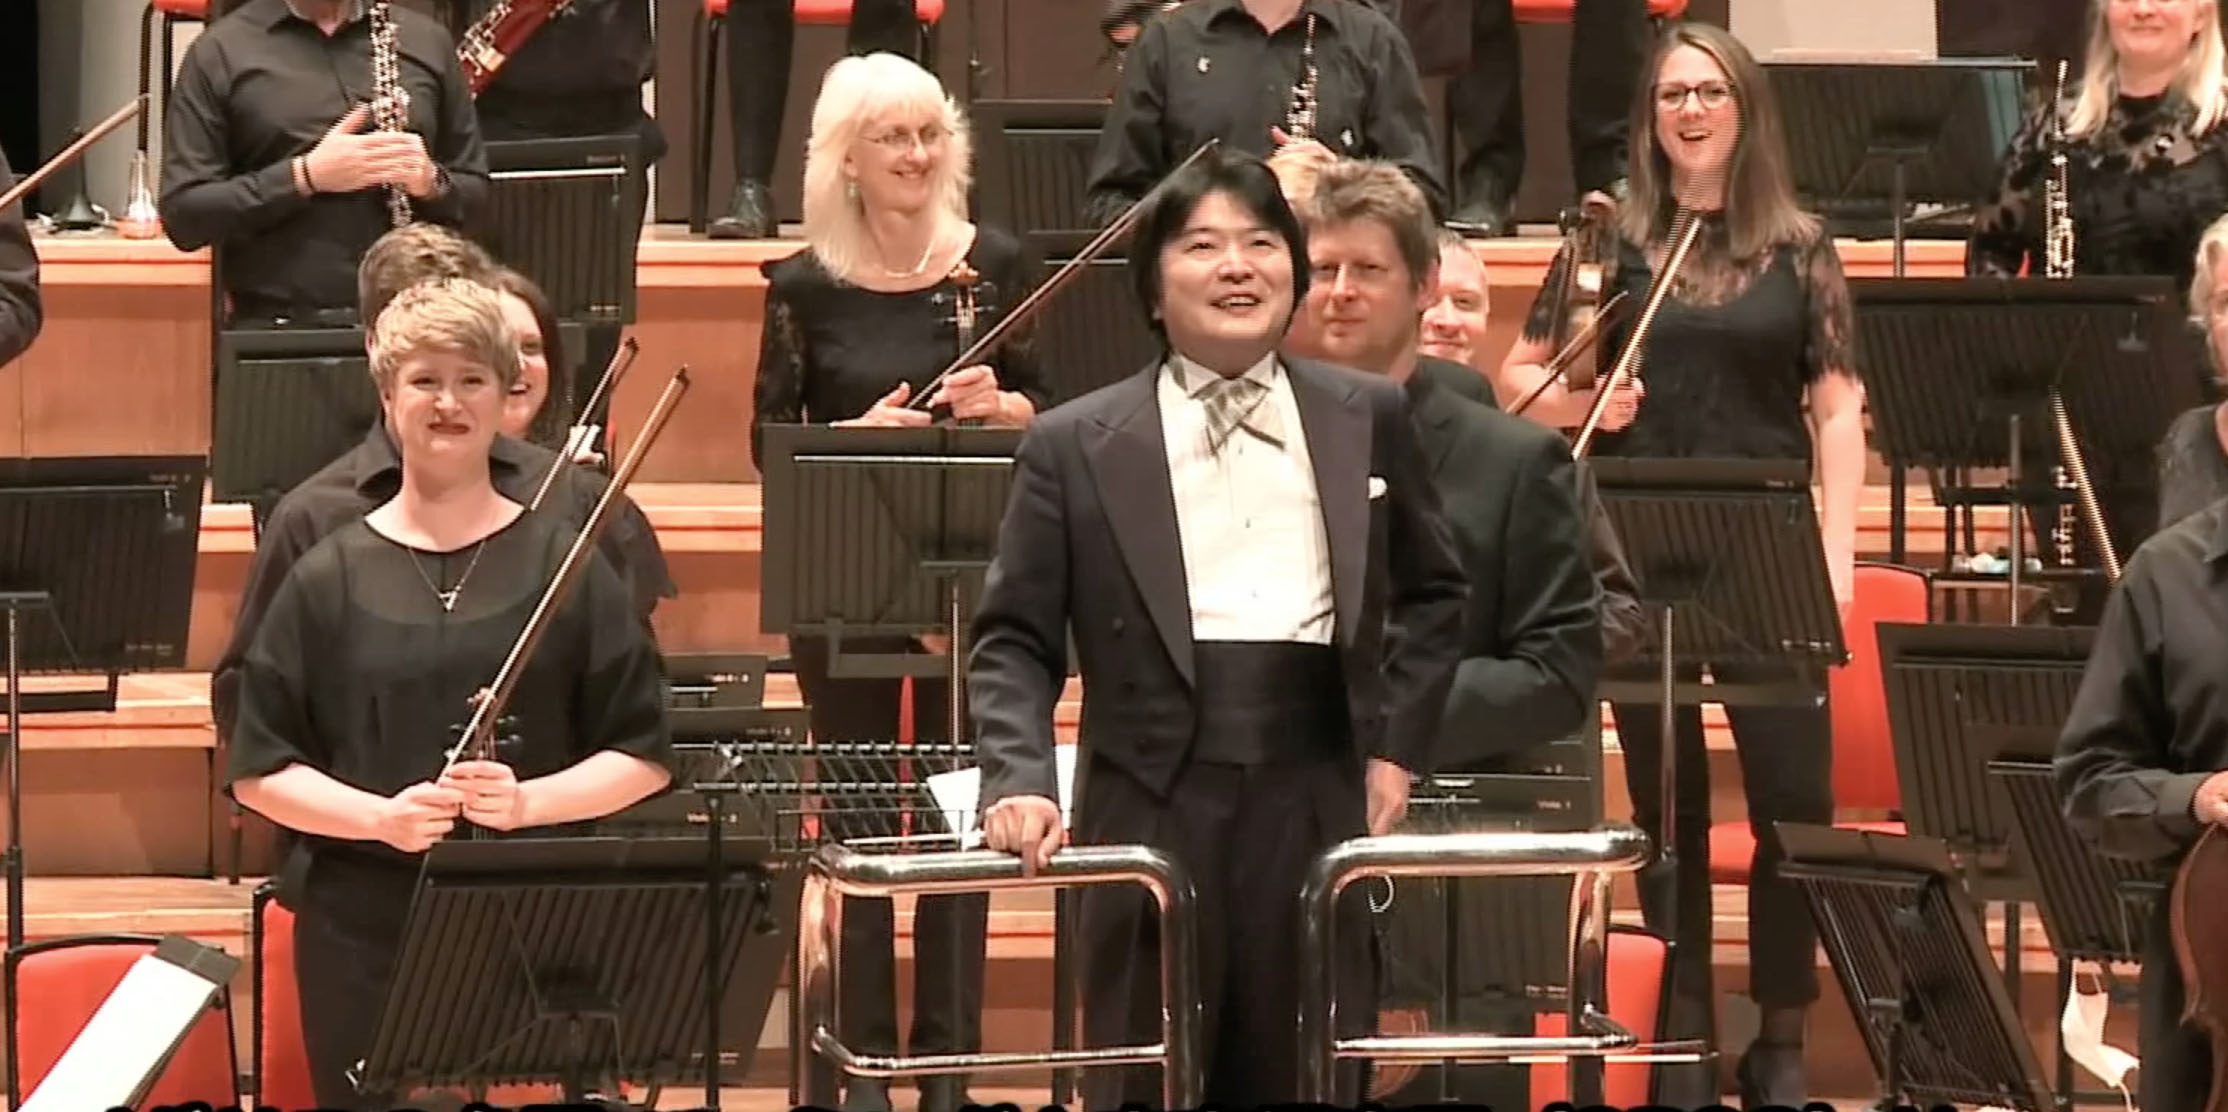 山田和樹 バーミンガム市響  首席指揮者就任（2023.4-）
発表直後リハーサル, インタビュー, 公演
サン＝サーンス：交響曲第3番「オルガン付き」より
City of Birmingham Symphony Orchestra Kazuki Yamada as Chief Conductor and Artistic Advisor（from April 2023）
SAINT-SAËNS, C.: Symphony No. 3, 